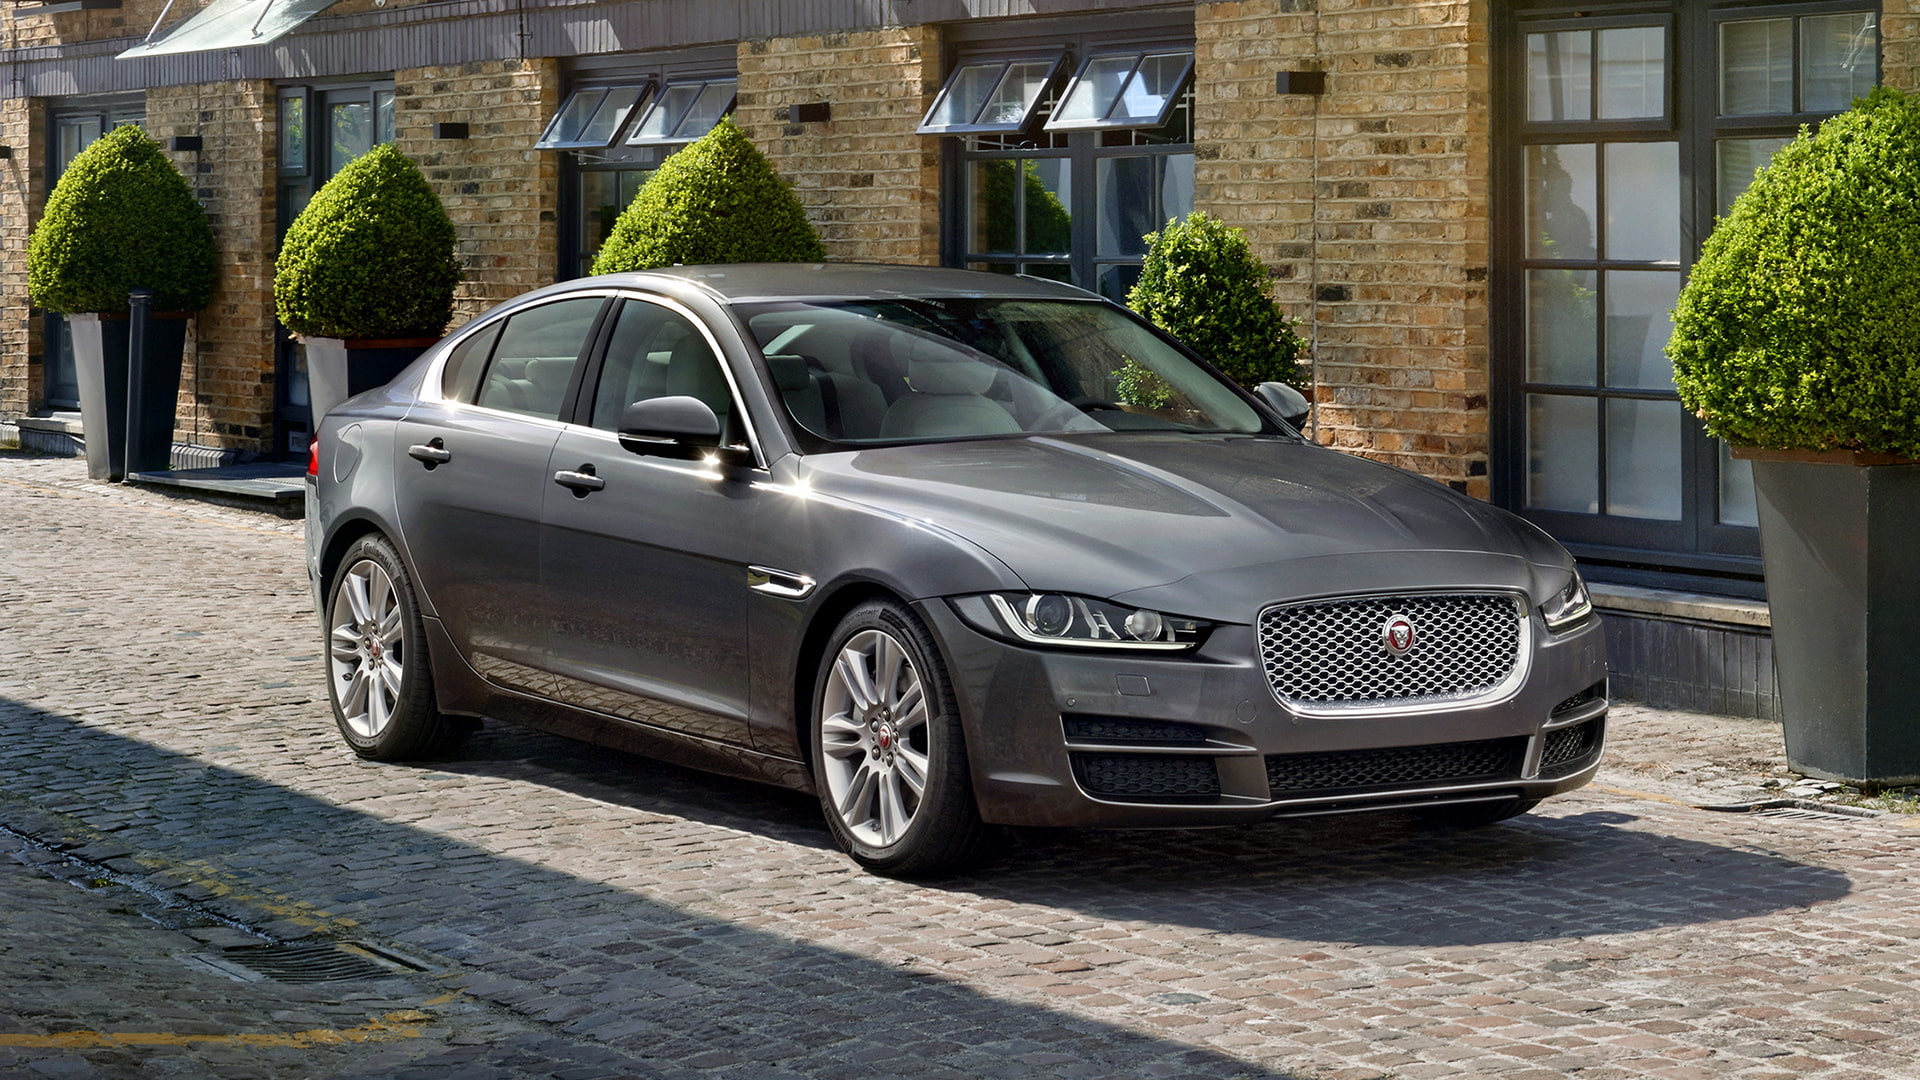 2015, Jaguar XE, Car, House, grey sedan